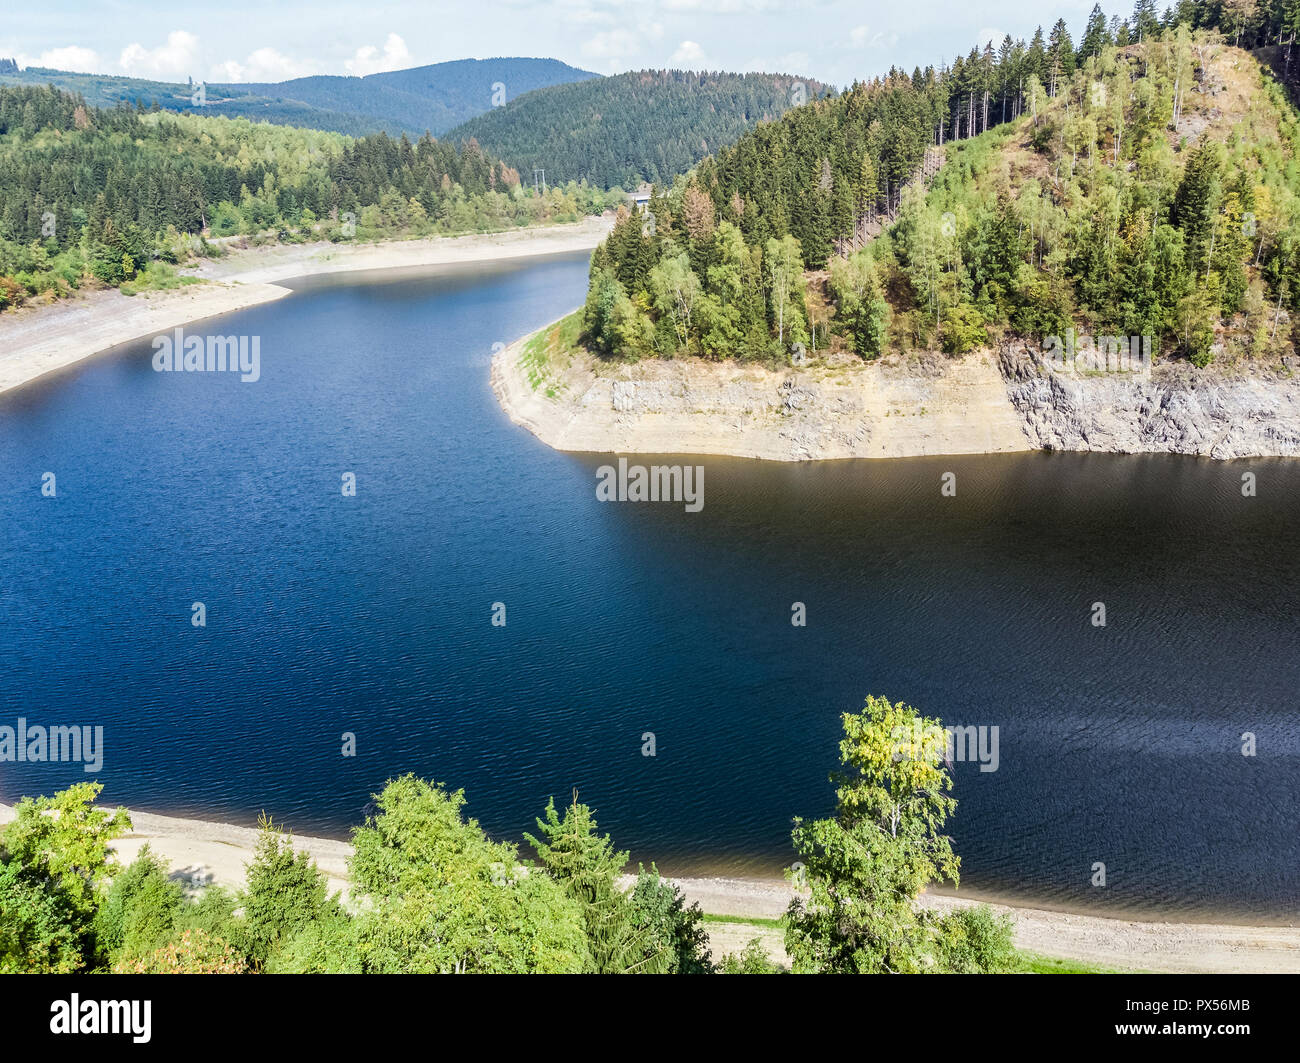 Luftbild der Okertalsperre (Dam) im Oberharz zwischen Clausthal-Zellerfeld und Goslar, mit der Drohne getroffen Stockfoto